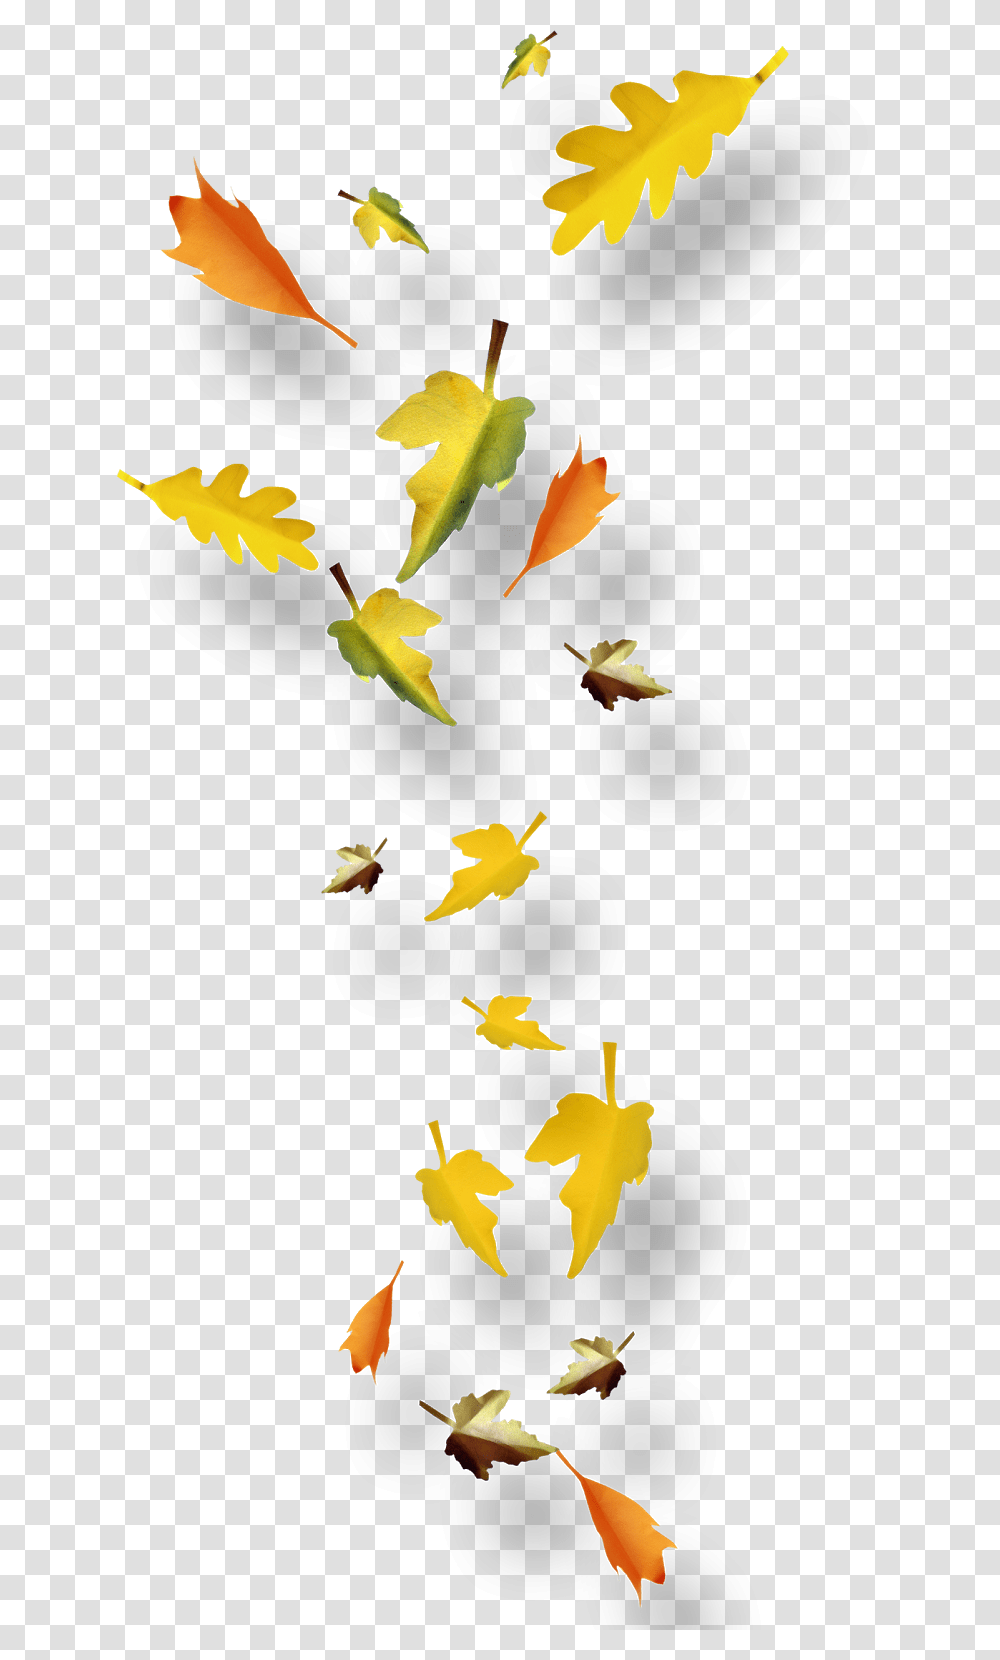 Imagen Fondo Transparente Powerpoint Feuilles D Automnes, Leaf, Plant, Tree, Maple Leaf Transparent Png